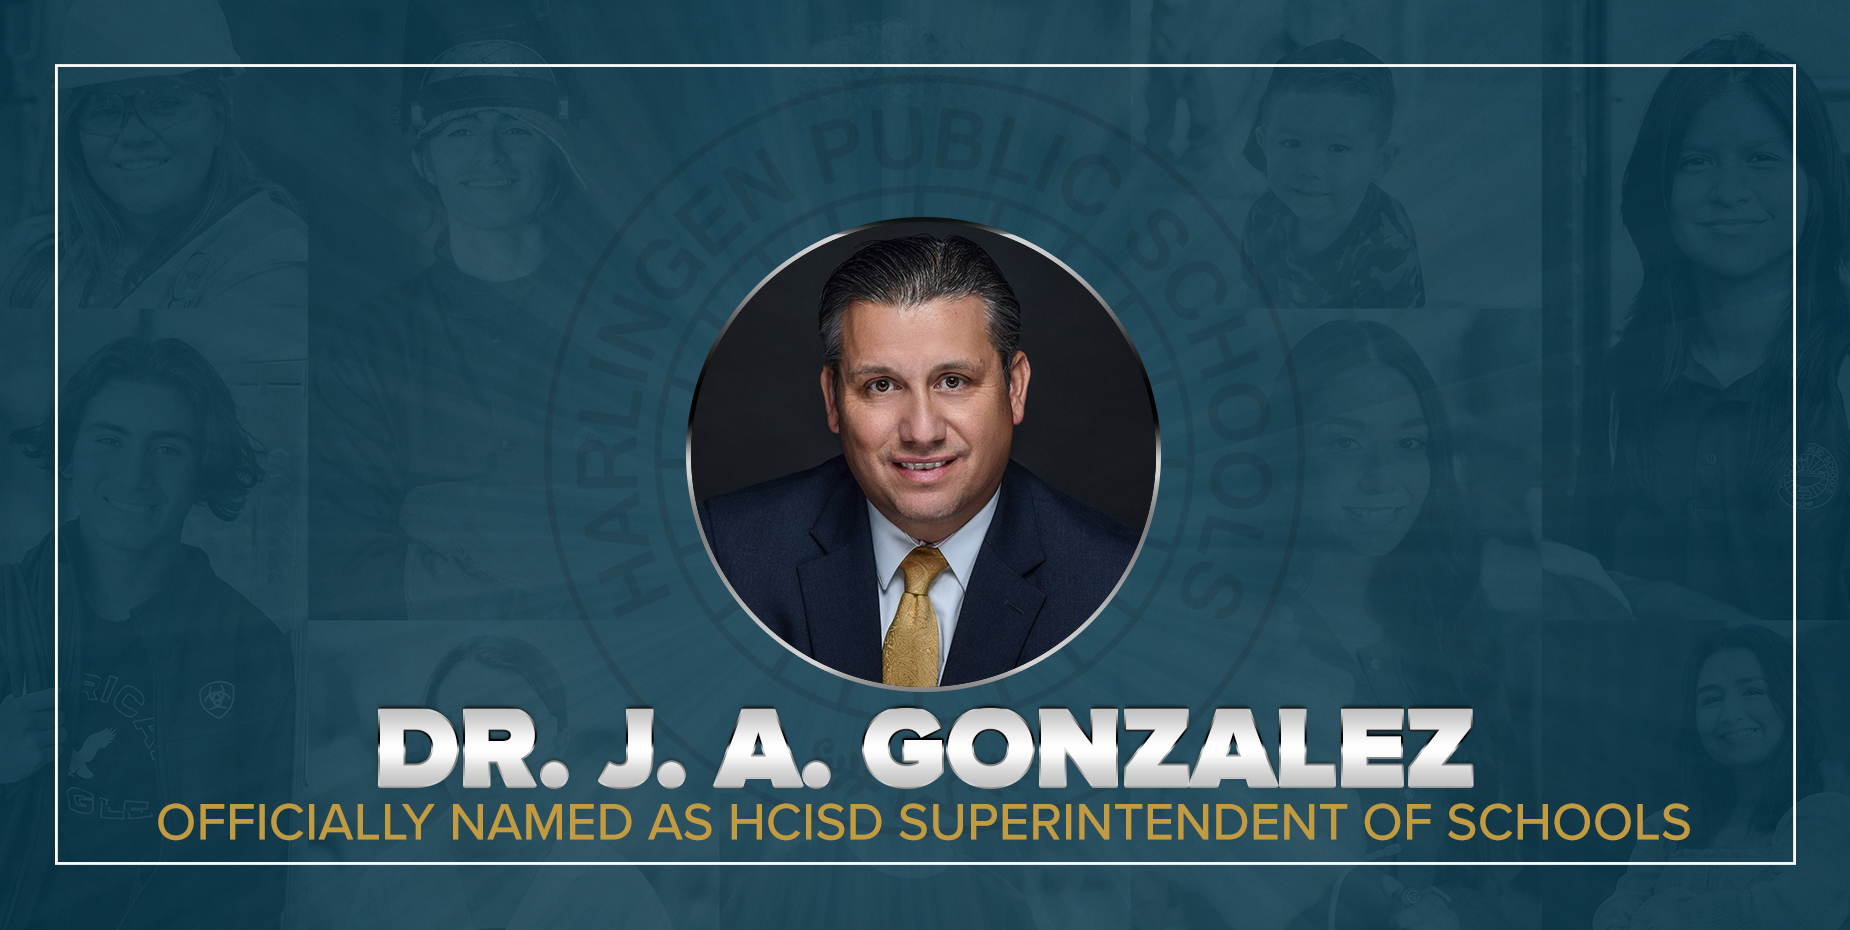 Dr. J.A. Gonzalez es oficialmente nombrado Superintendente de Escuelas de HCISD.